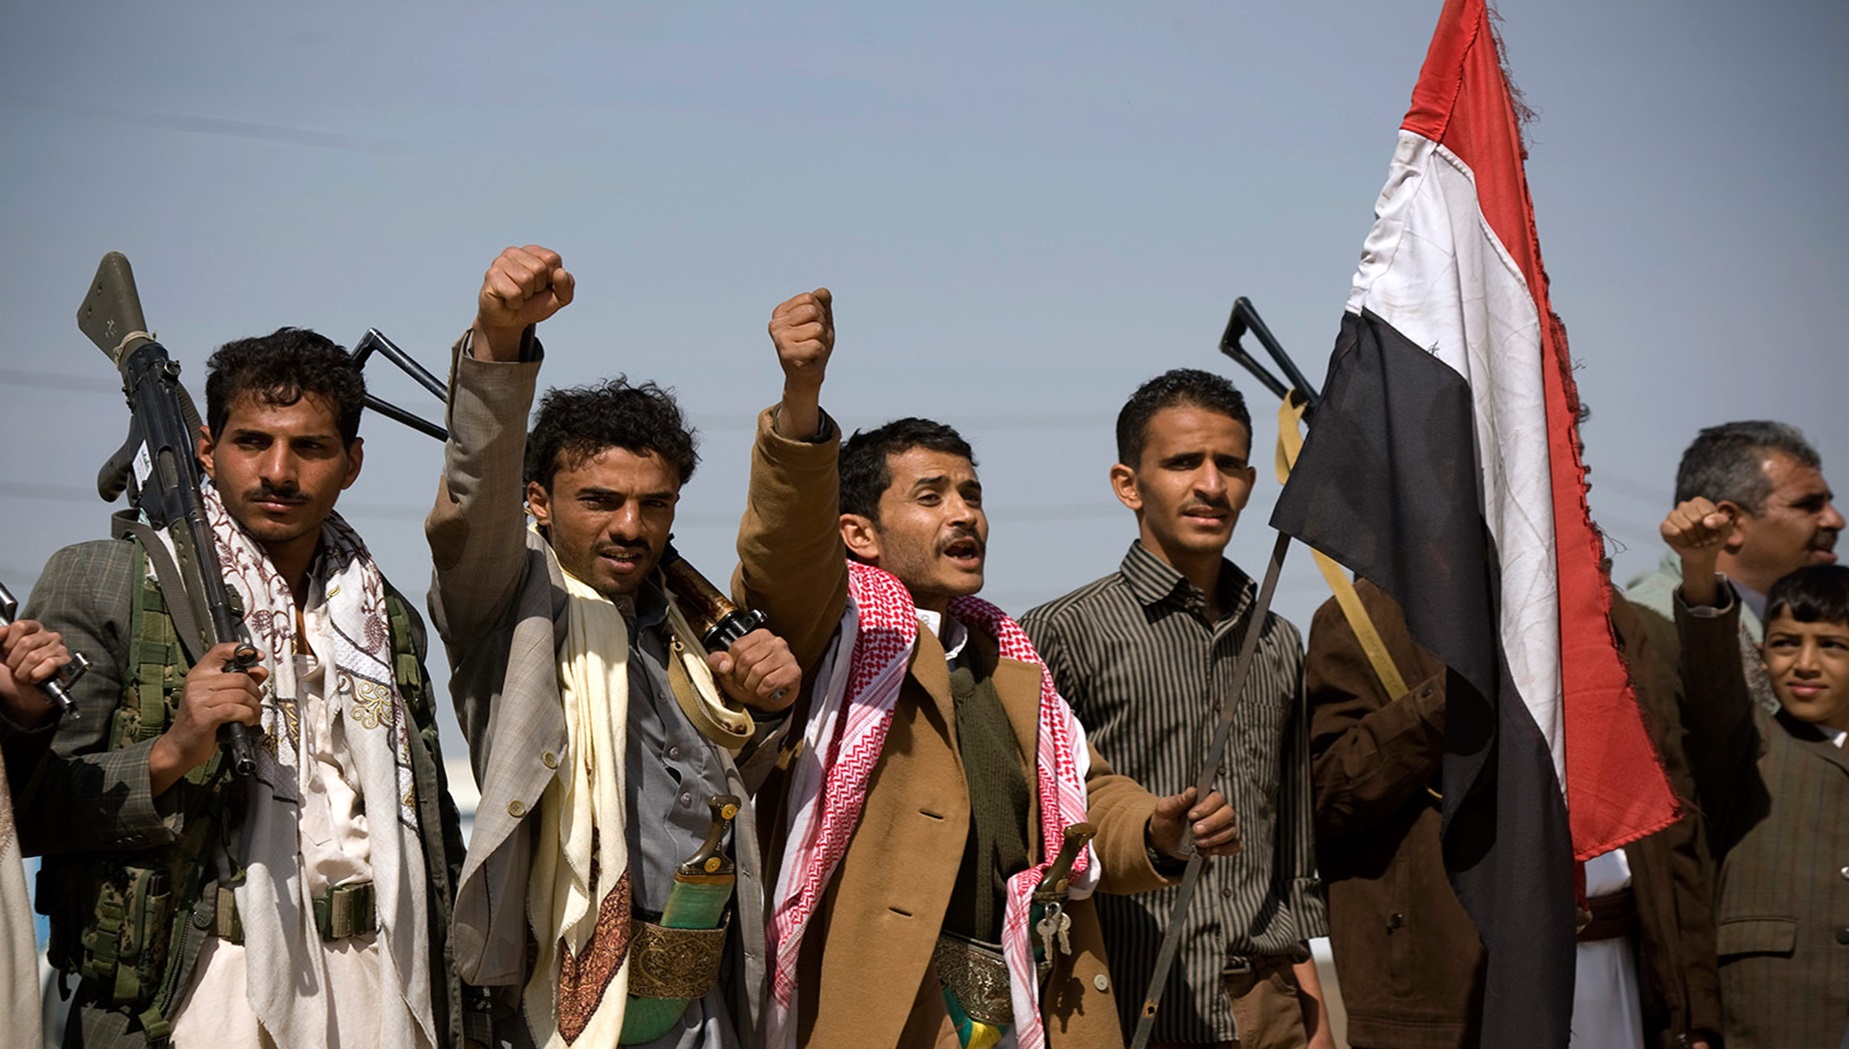 Dalle montagne al mare: gli Houthi sfidano il mondo